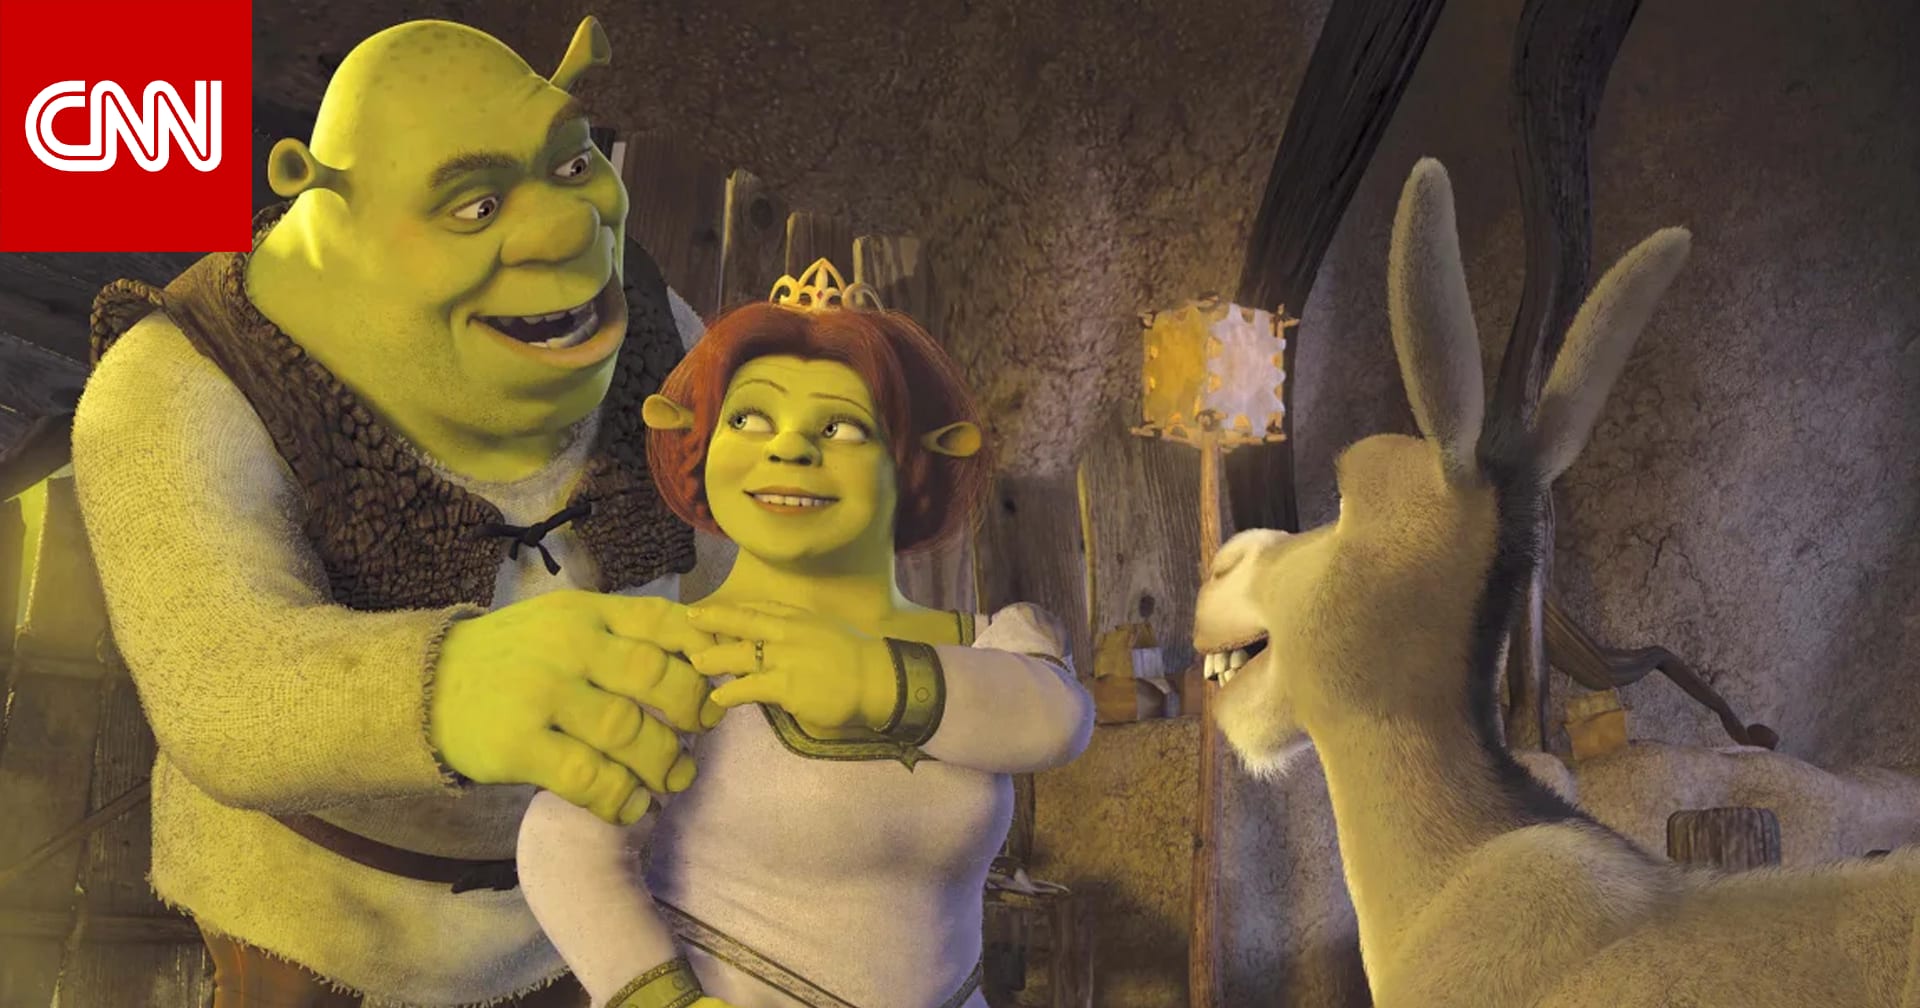 الغول عائد في منتصف 2026.. الإعلان عن جزء خامس من فيلم "Shrek"